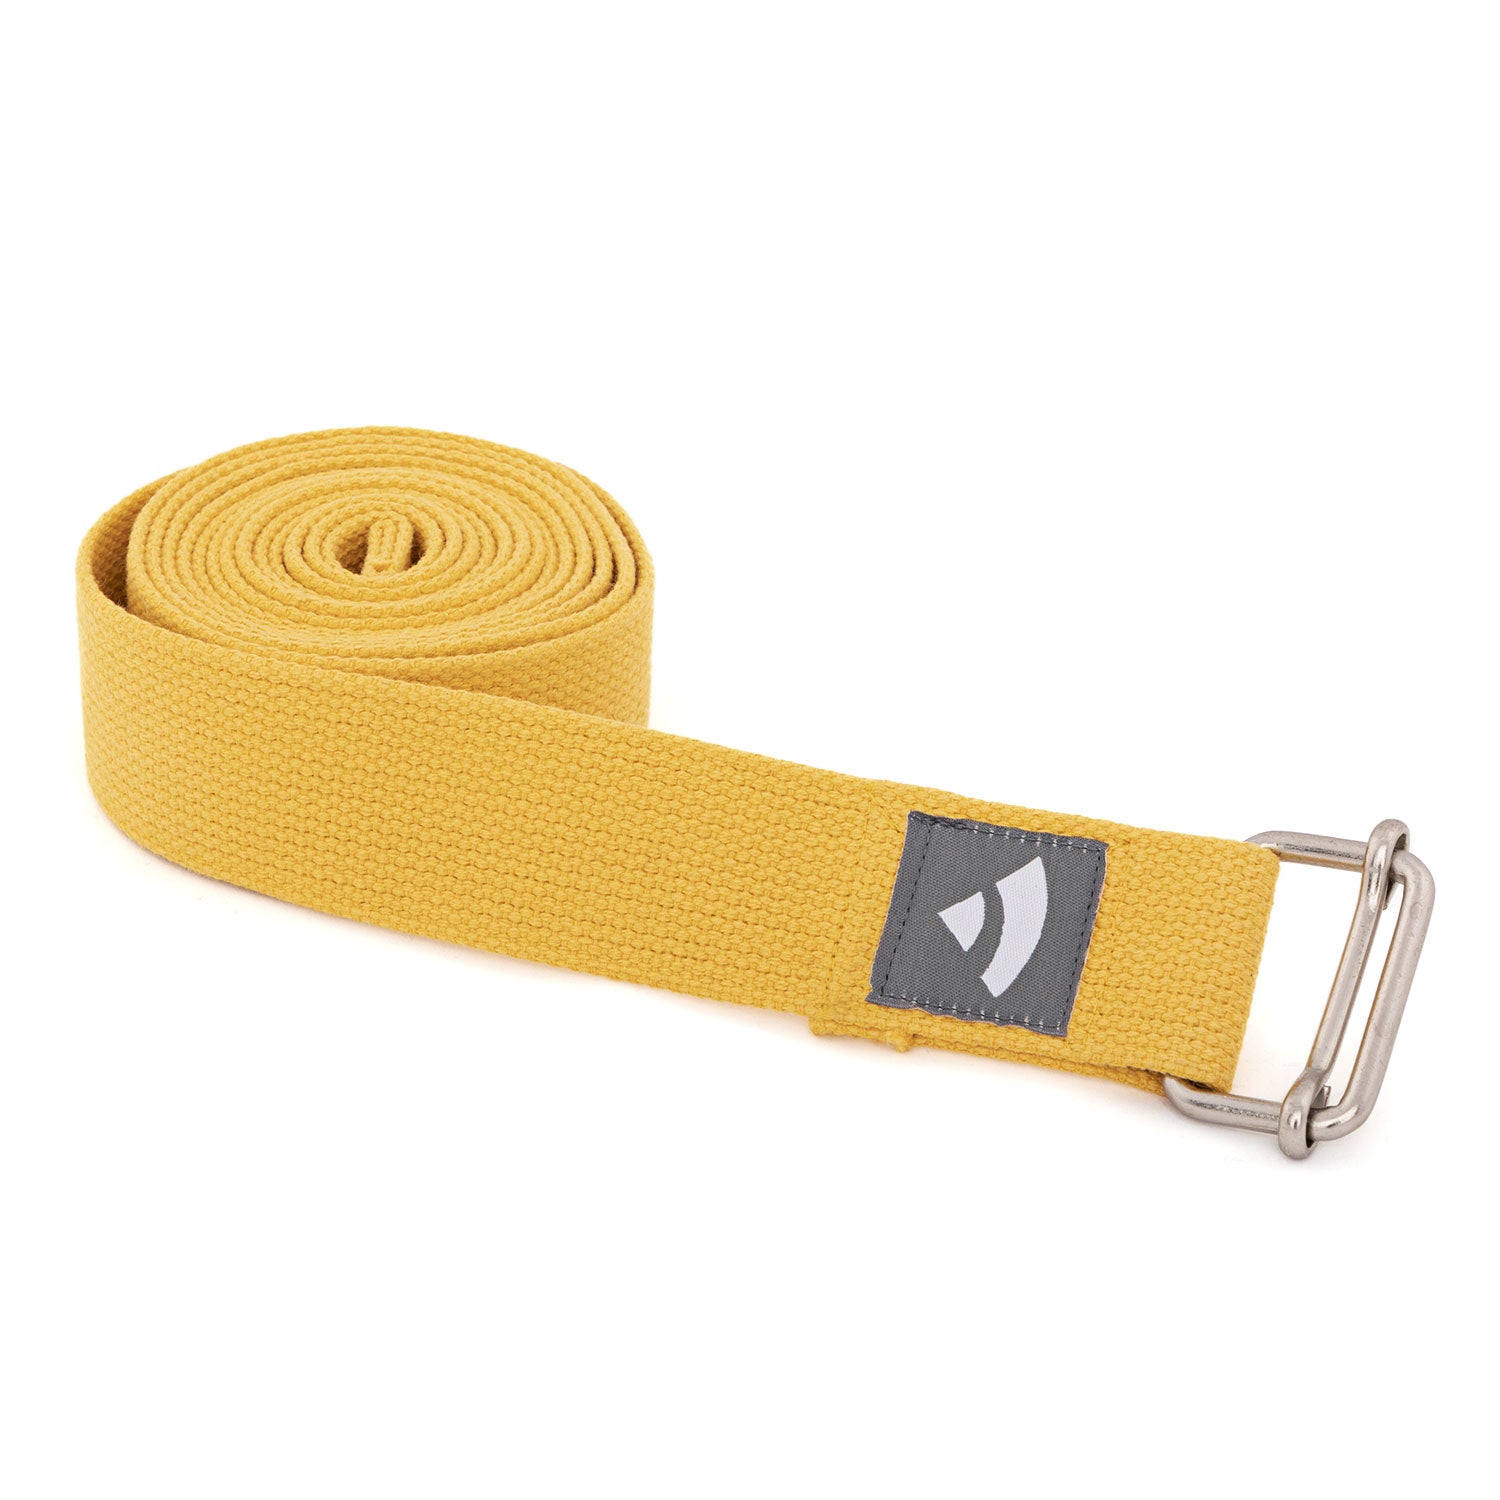 Cinturón de Yoga YogaYe.com